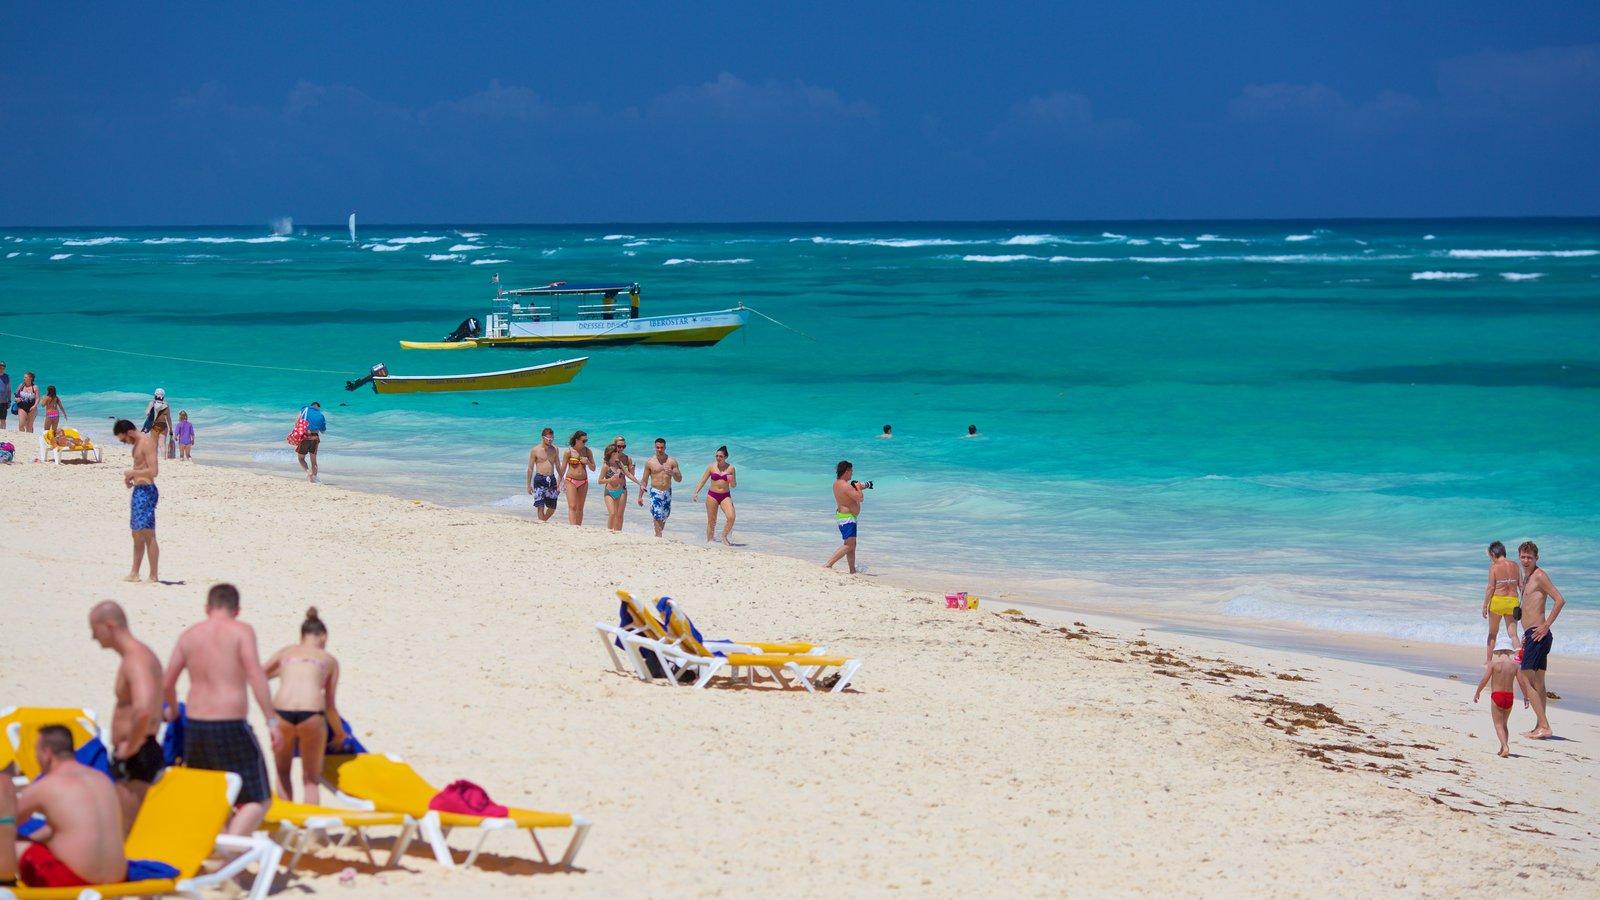 8 vietas, kuras nedrīkst palaist garām Puntakanā, Dominikānas Republikā